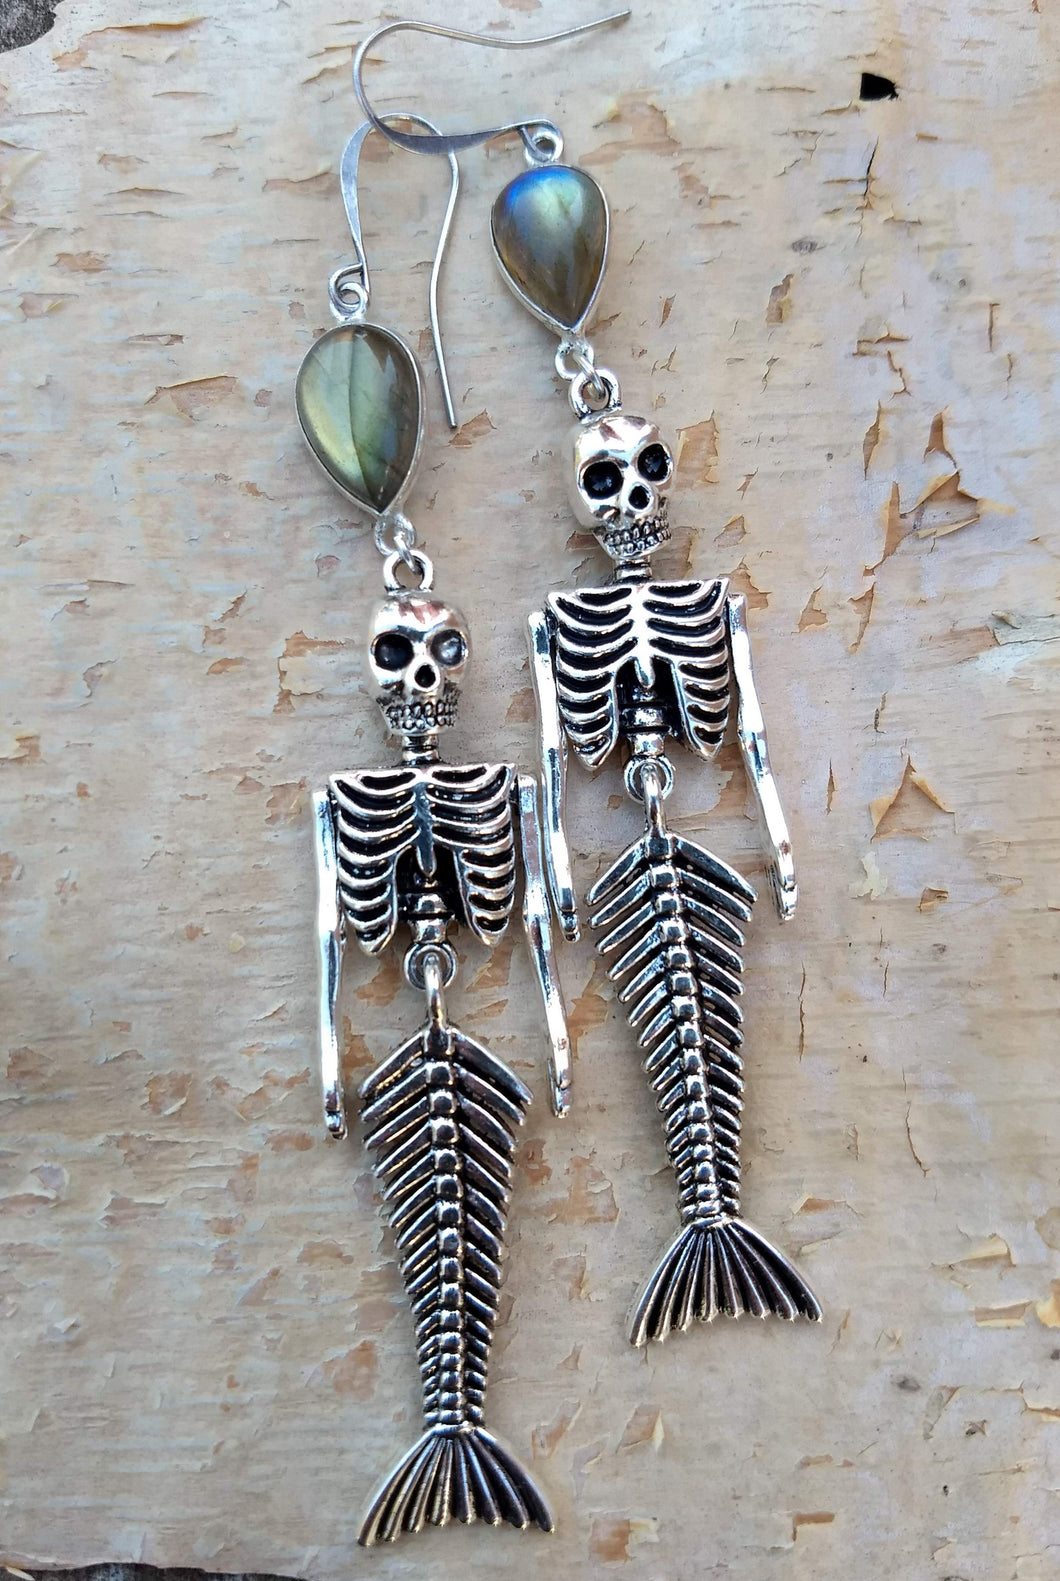 Skeleton Mermaid Earrings with Labradorite - Minxes' Trinkets